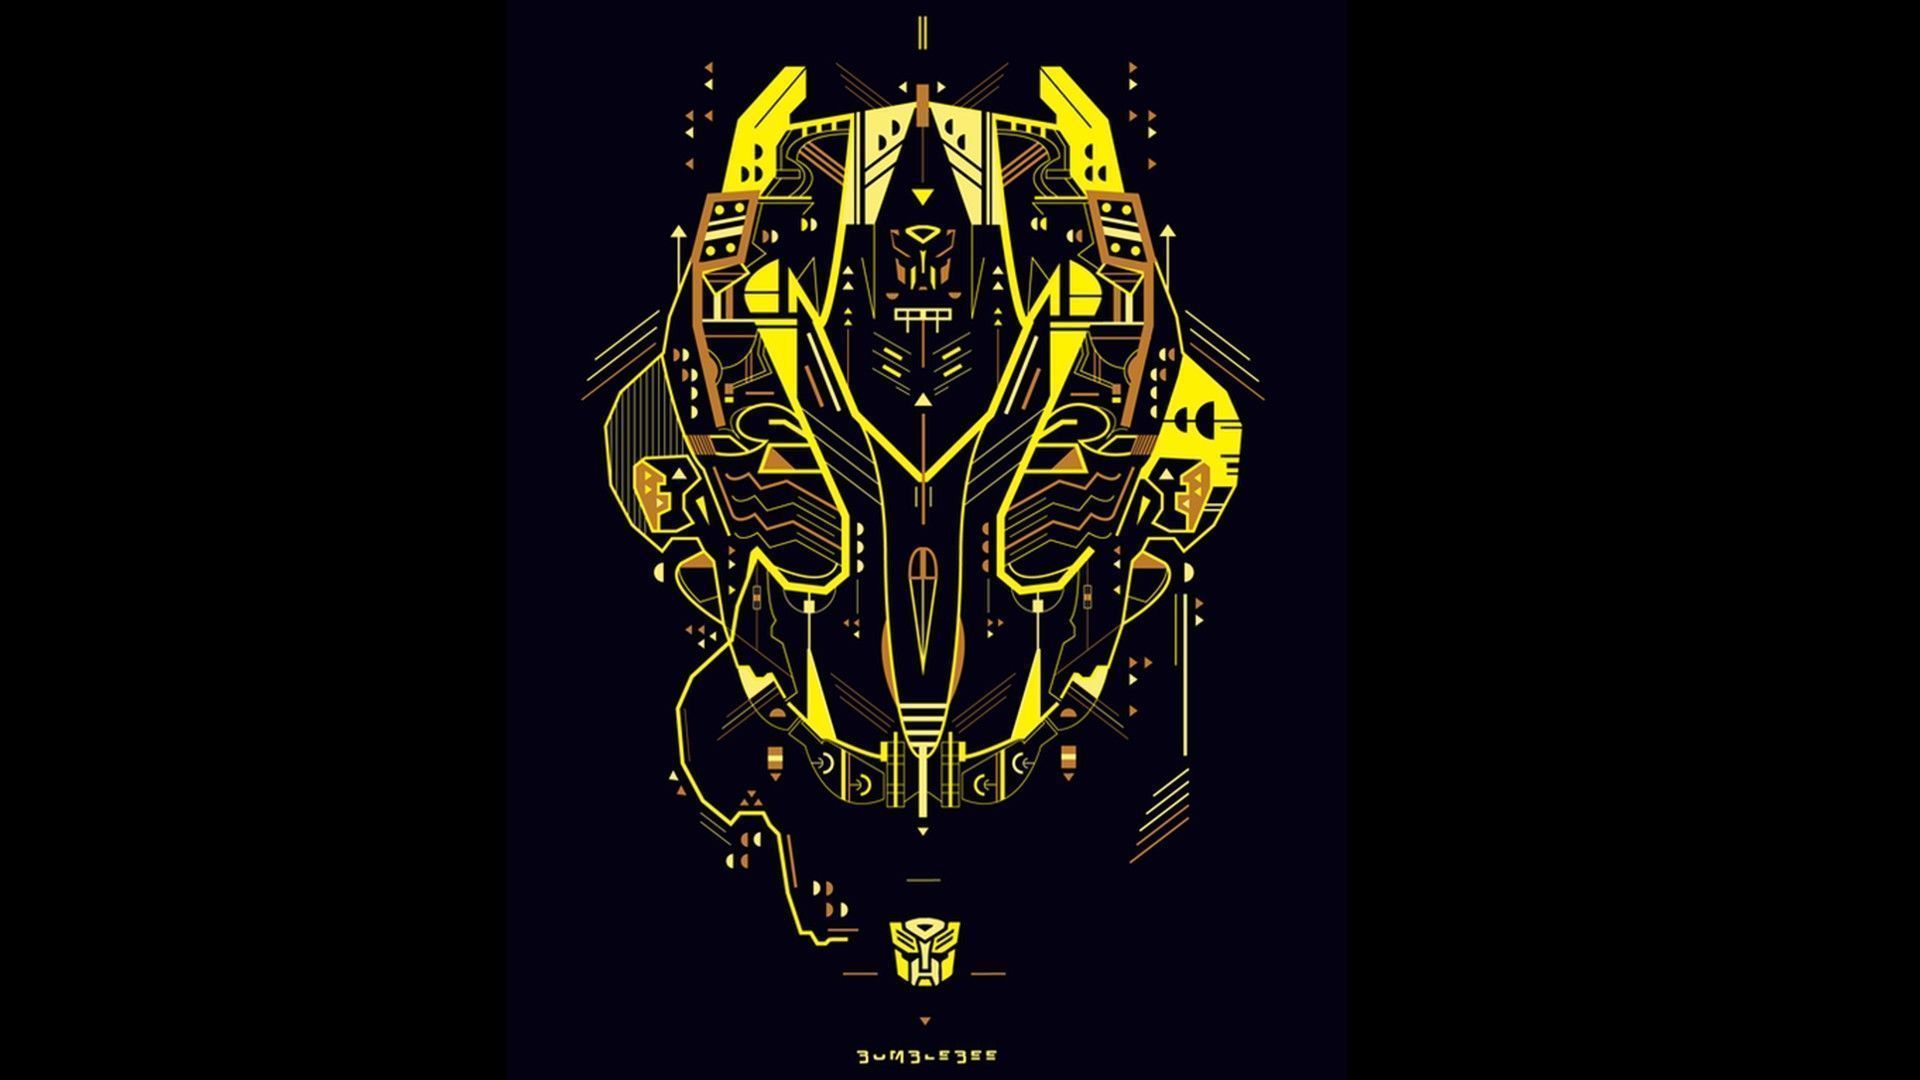 Transformers HD Wallpaper | 1920x1080 | ID:35311